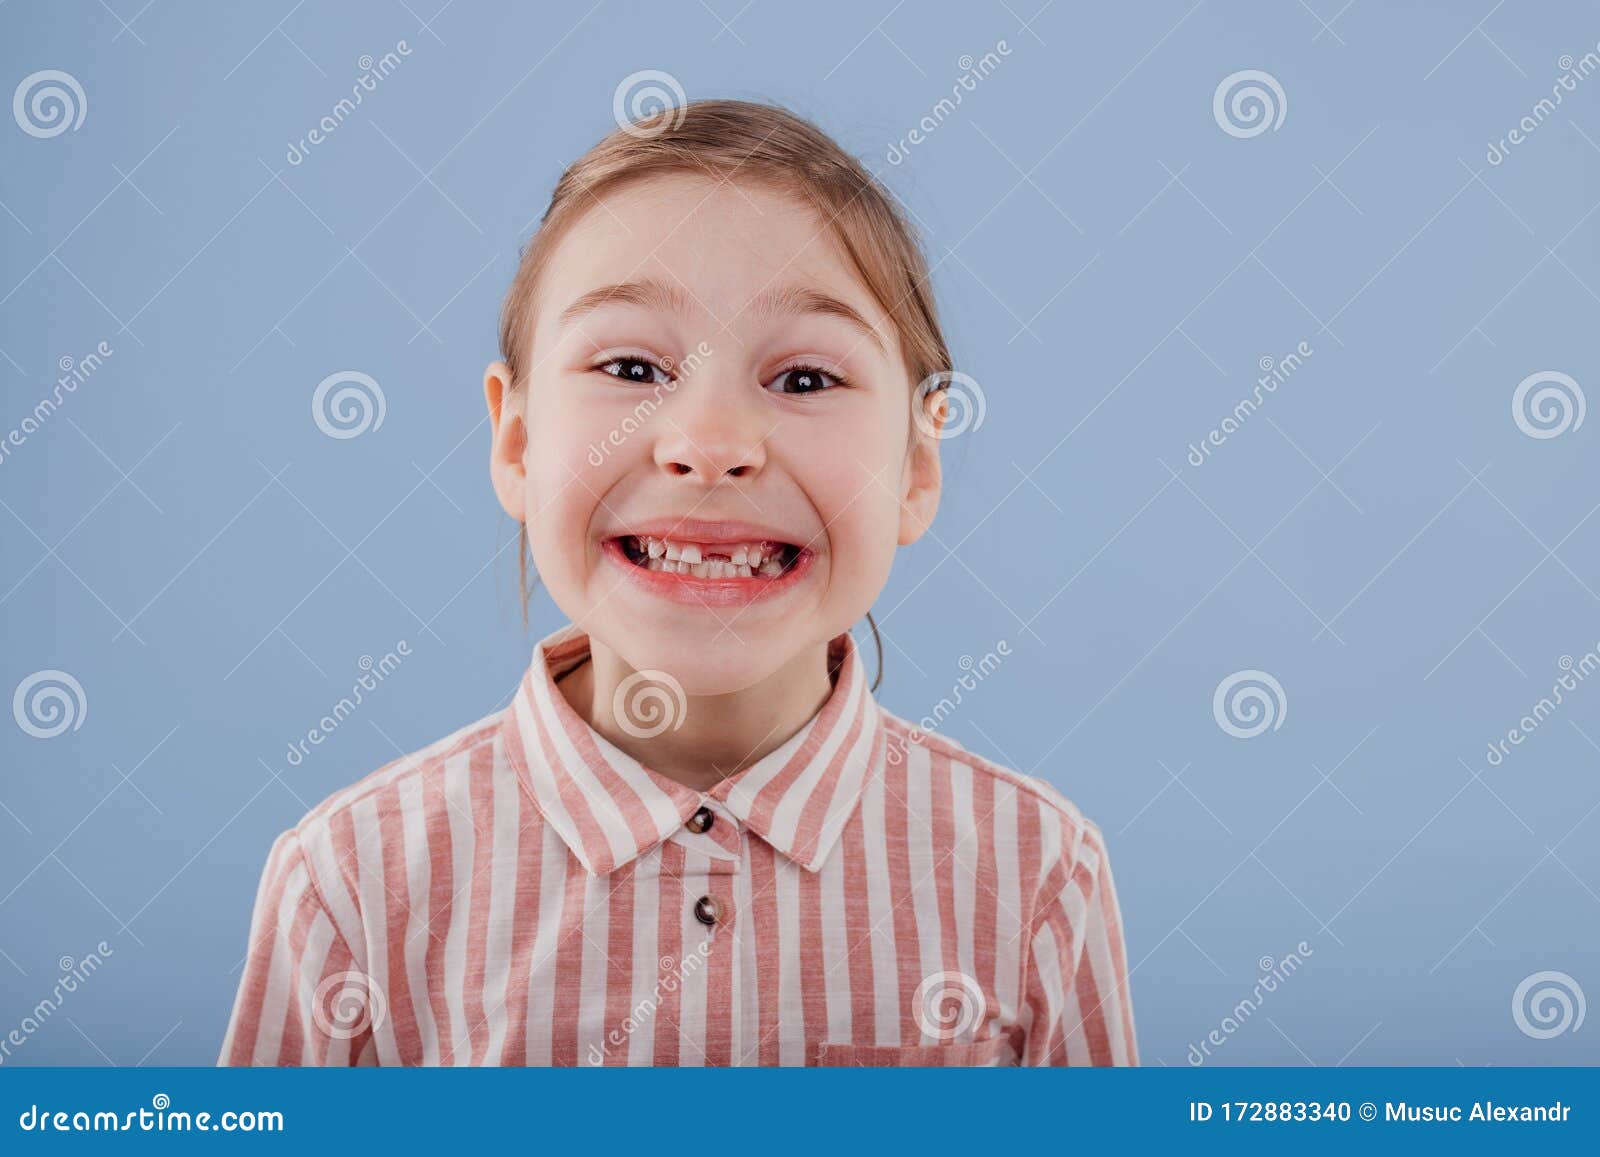 没有牙齿的微笑男孩展示他丢失的牙齿牛奶高清摄影大图-千库网